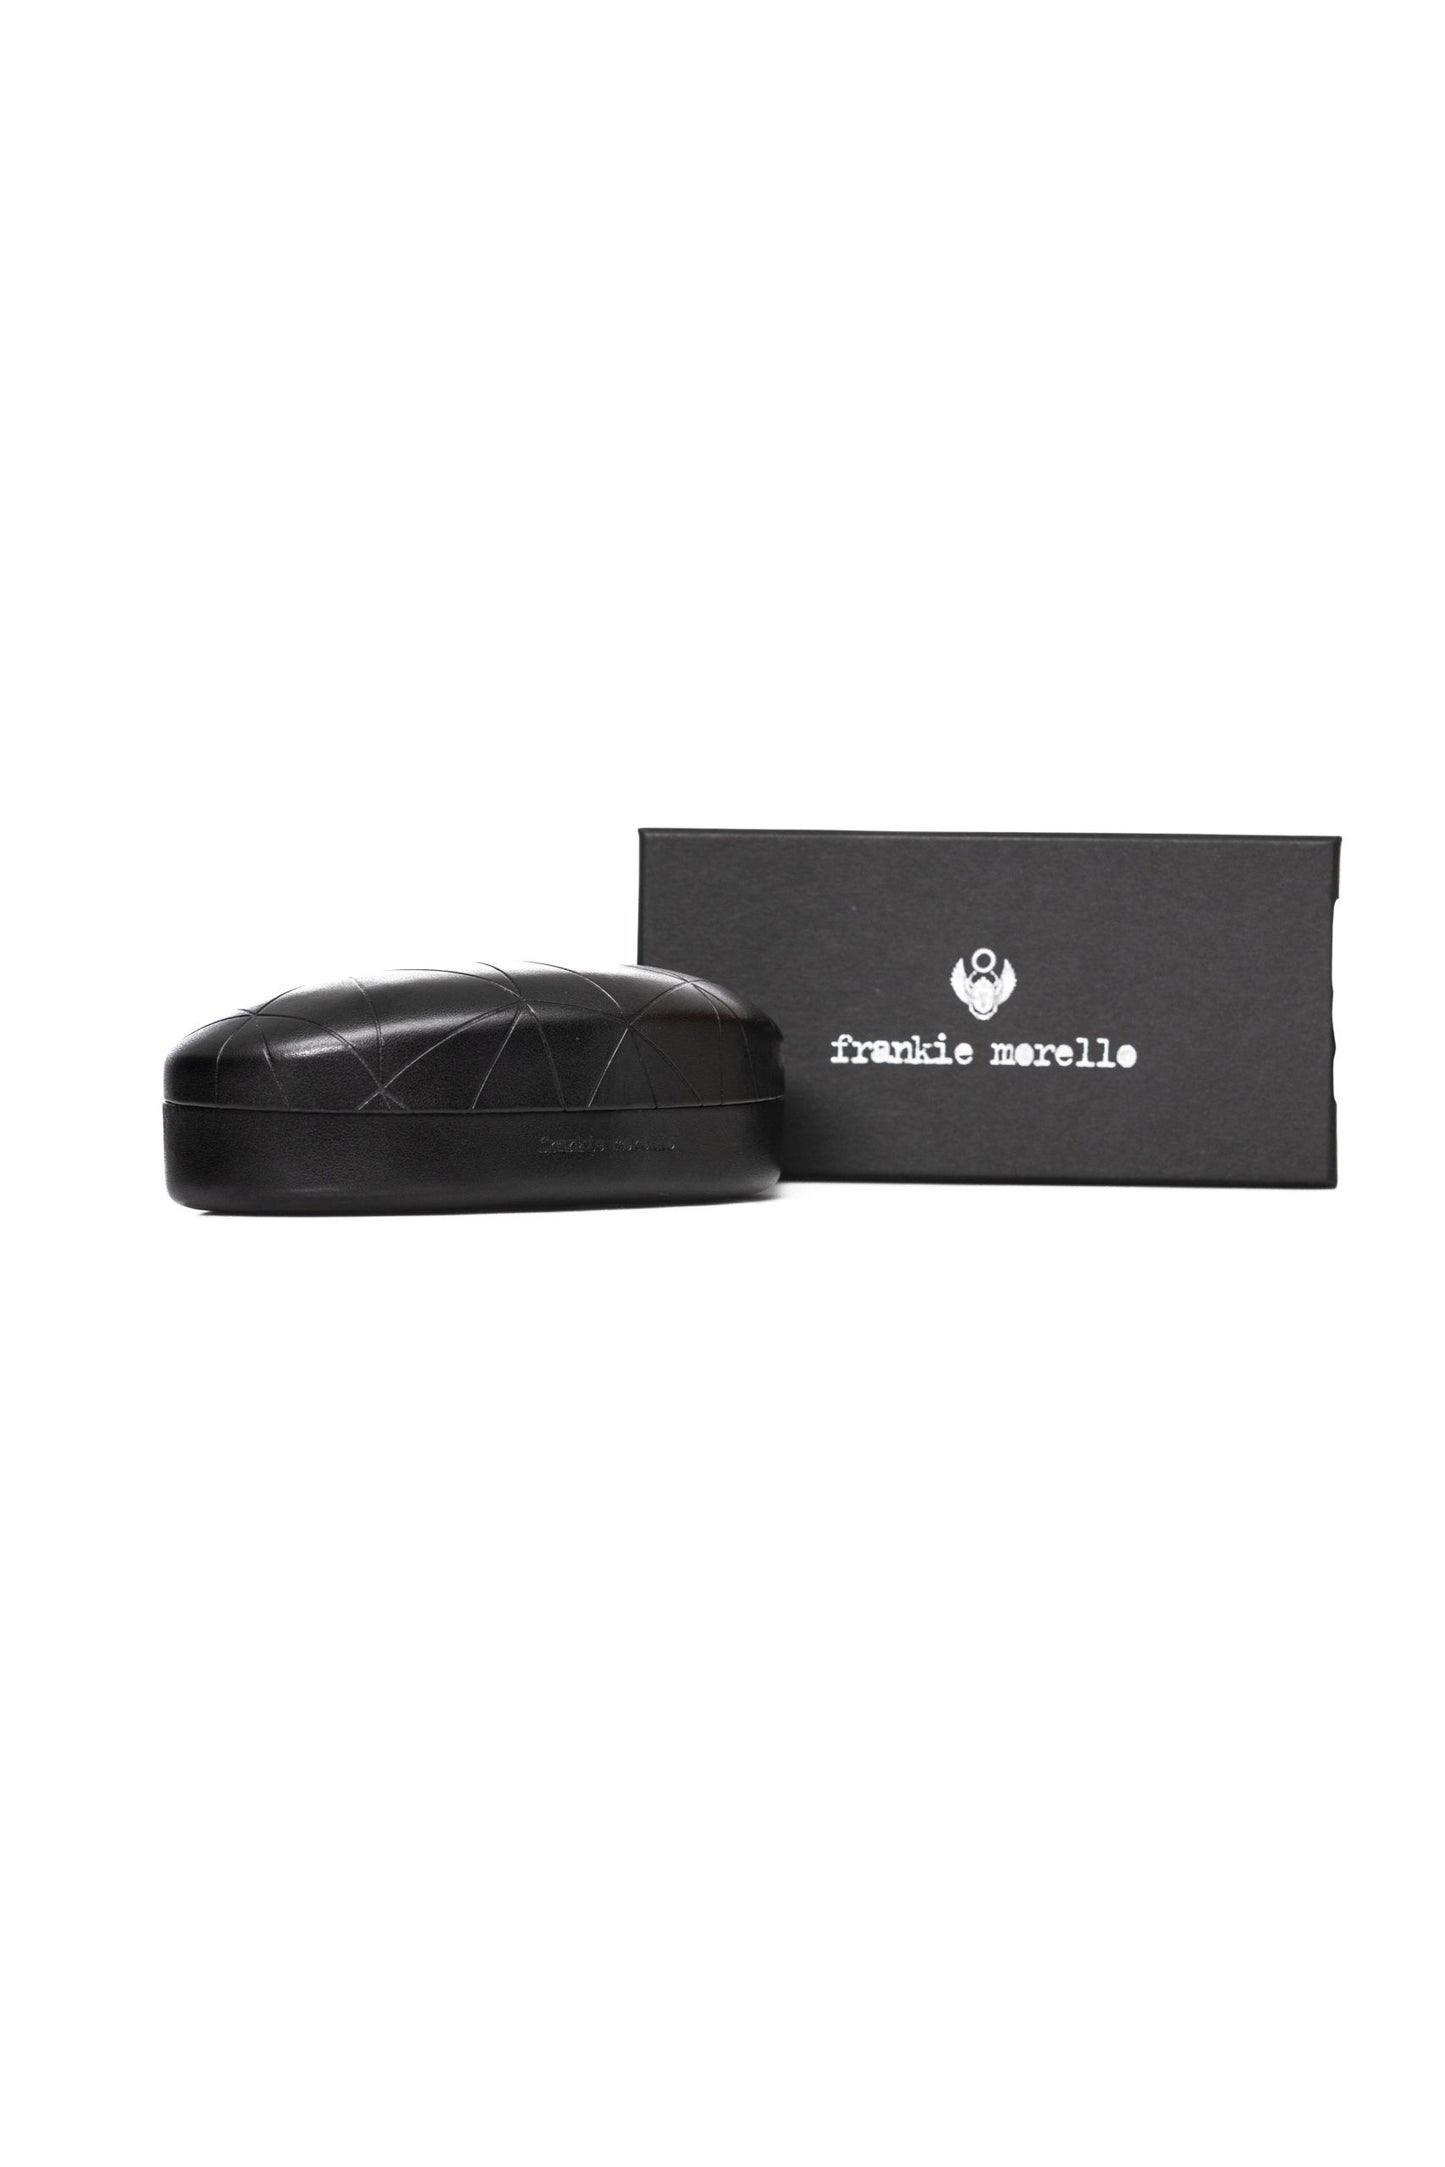 Frankie Morello FRMO-22123 Silver Metallic Fibre Sunglasses